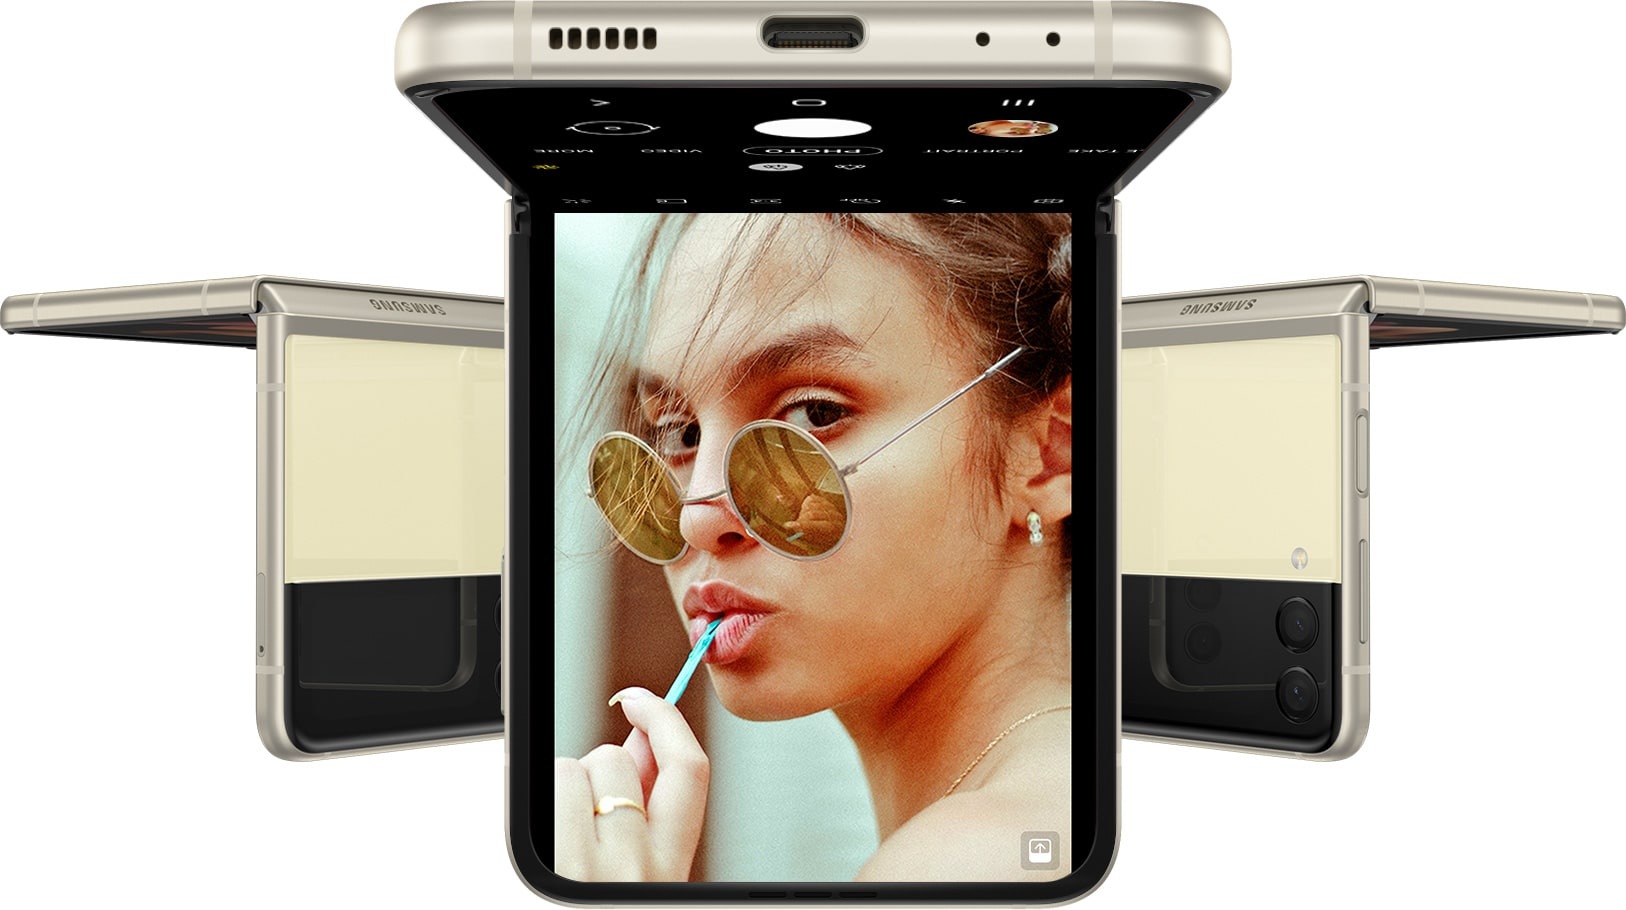 Tri Galaxy Z Flip3 5G telefona, svi u Flex načinu rada okrenuti naopačke. Telefon okrenut prema naprijed prikazuje aplikaciju Kamera na glavnom ekranu i ženu koja gleda u kameru.